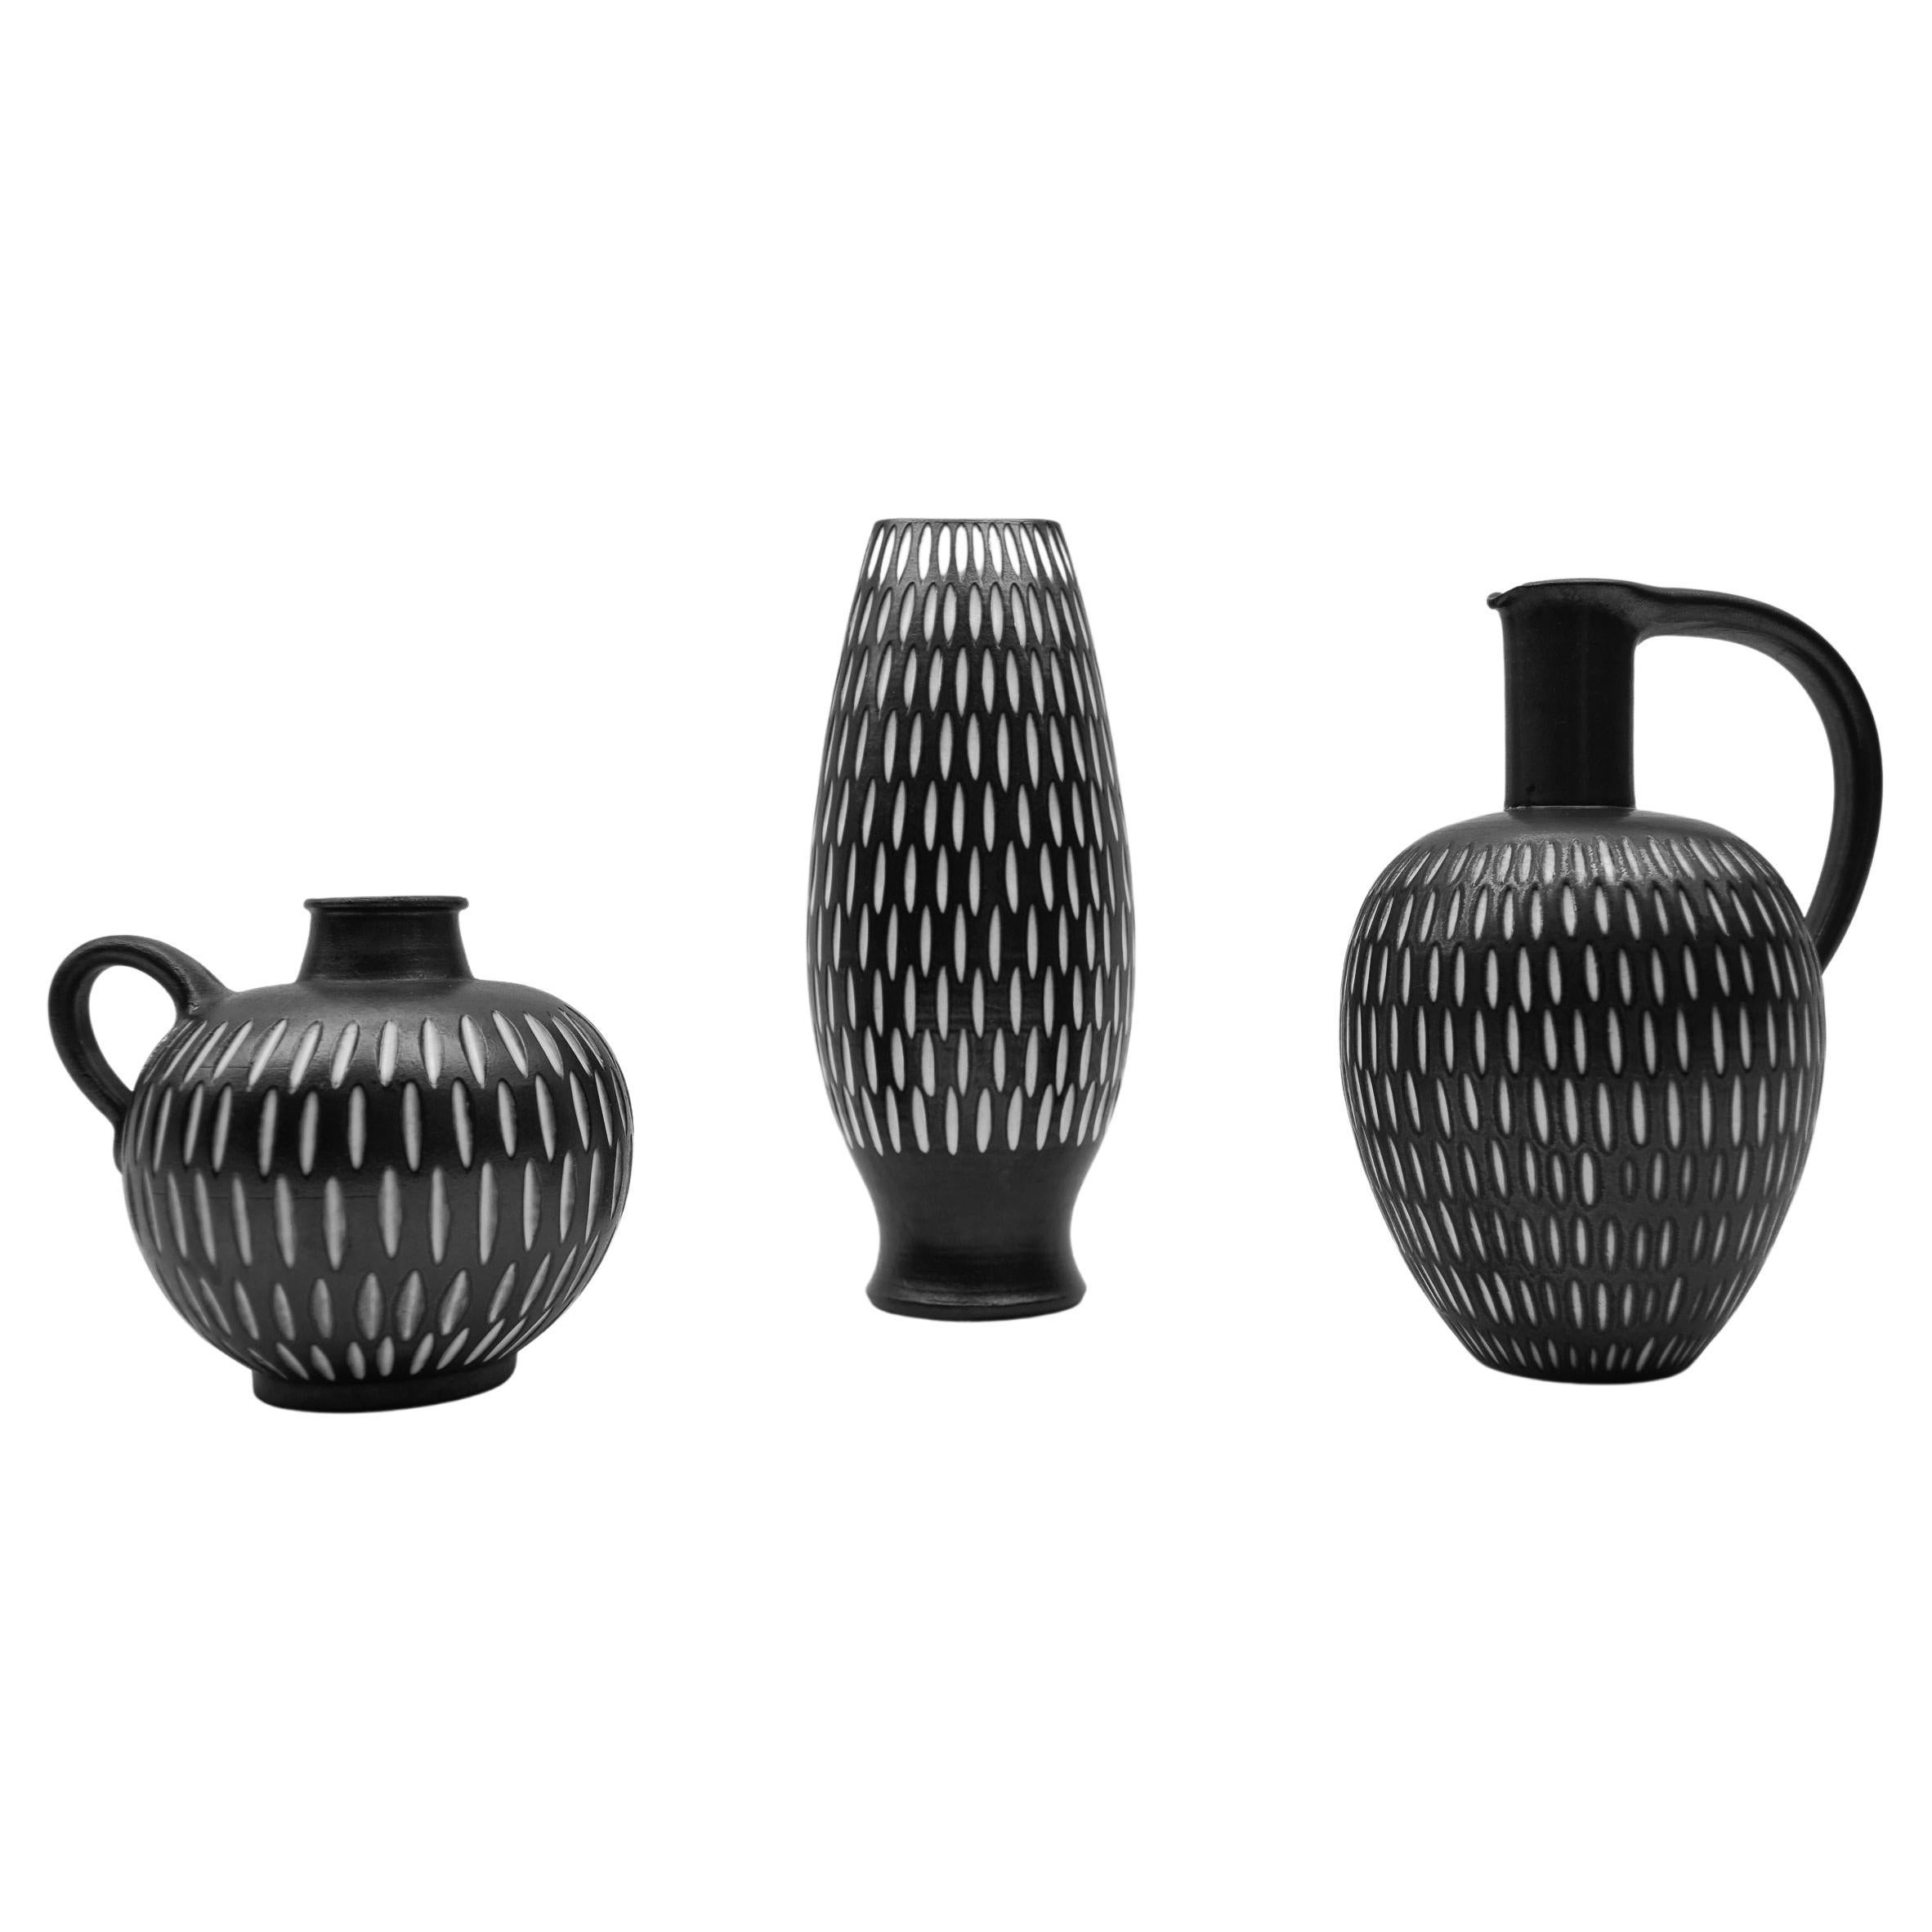 Set of 3 Studio Ceramic Vases by Wilhelm & Elly Kuch, 1960s, Germany